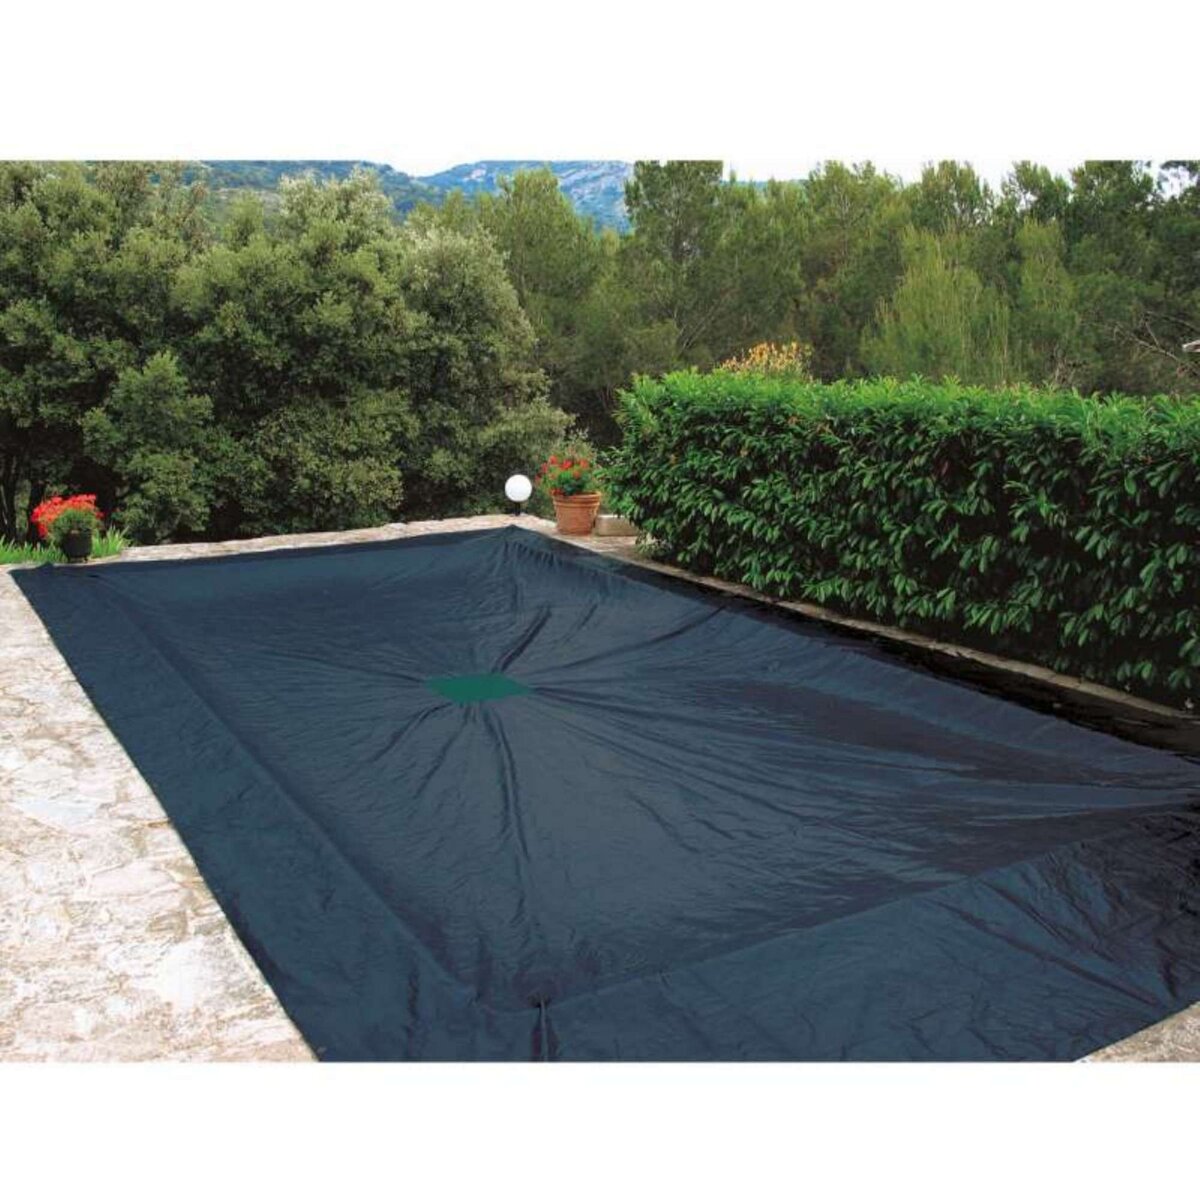  Bâche de protection 240g/m2 pour piscine rectangulaire 5 x 9 m